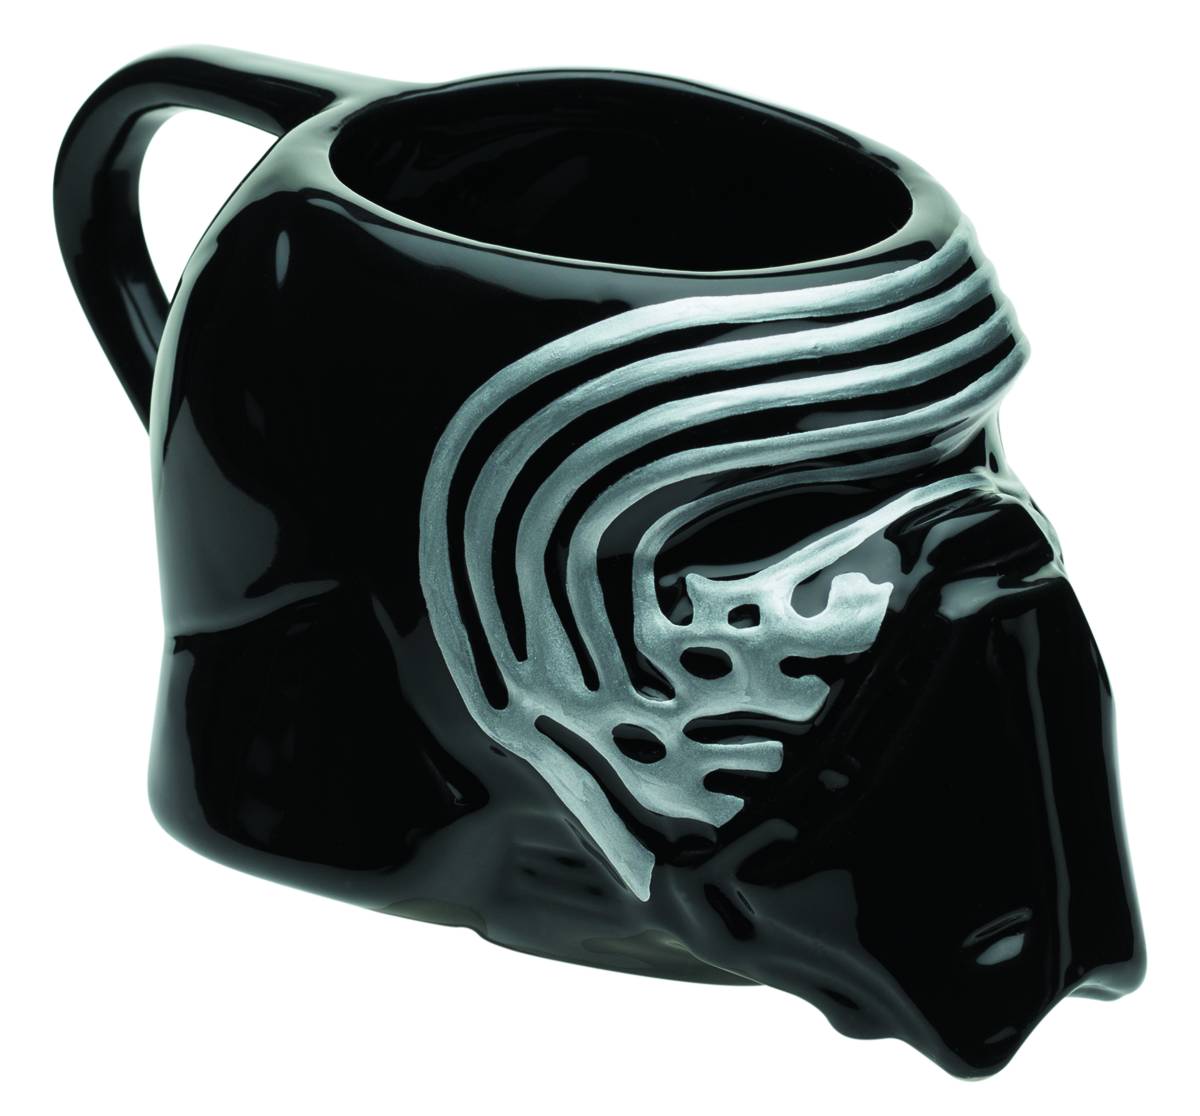 New Boxed Star Wars Kylo Ren Sculpted Black Glazed Ceramic Mug Cup & Bank Set 